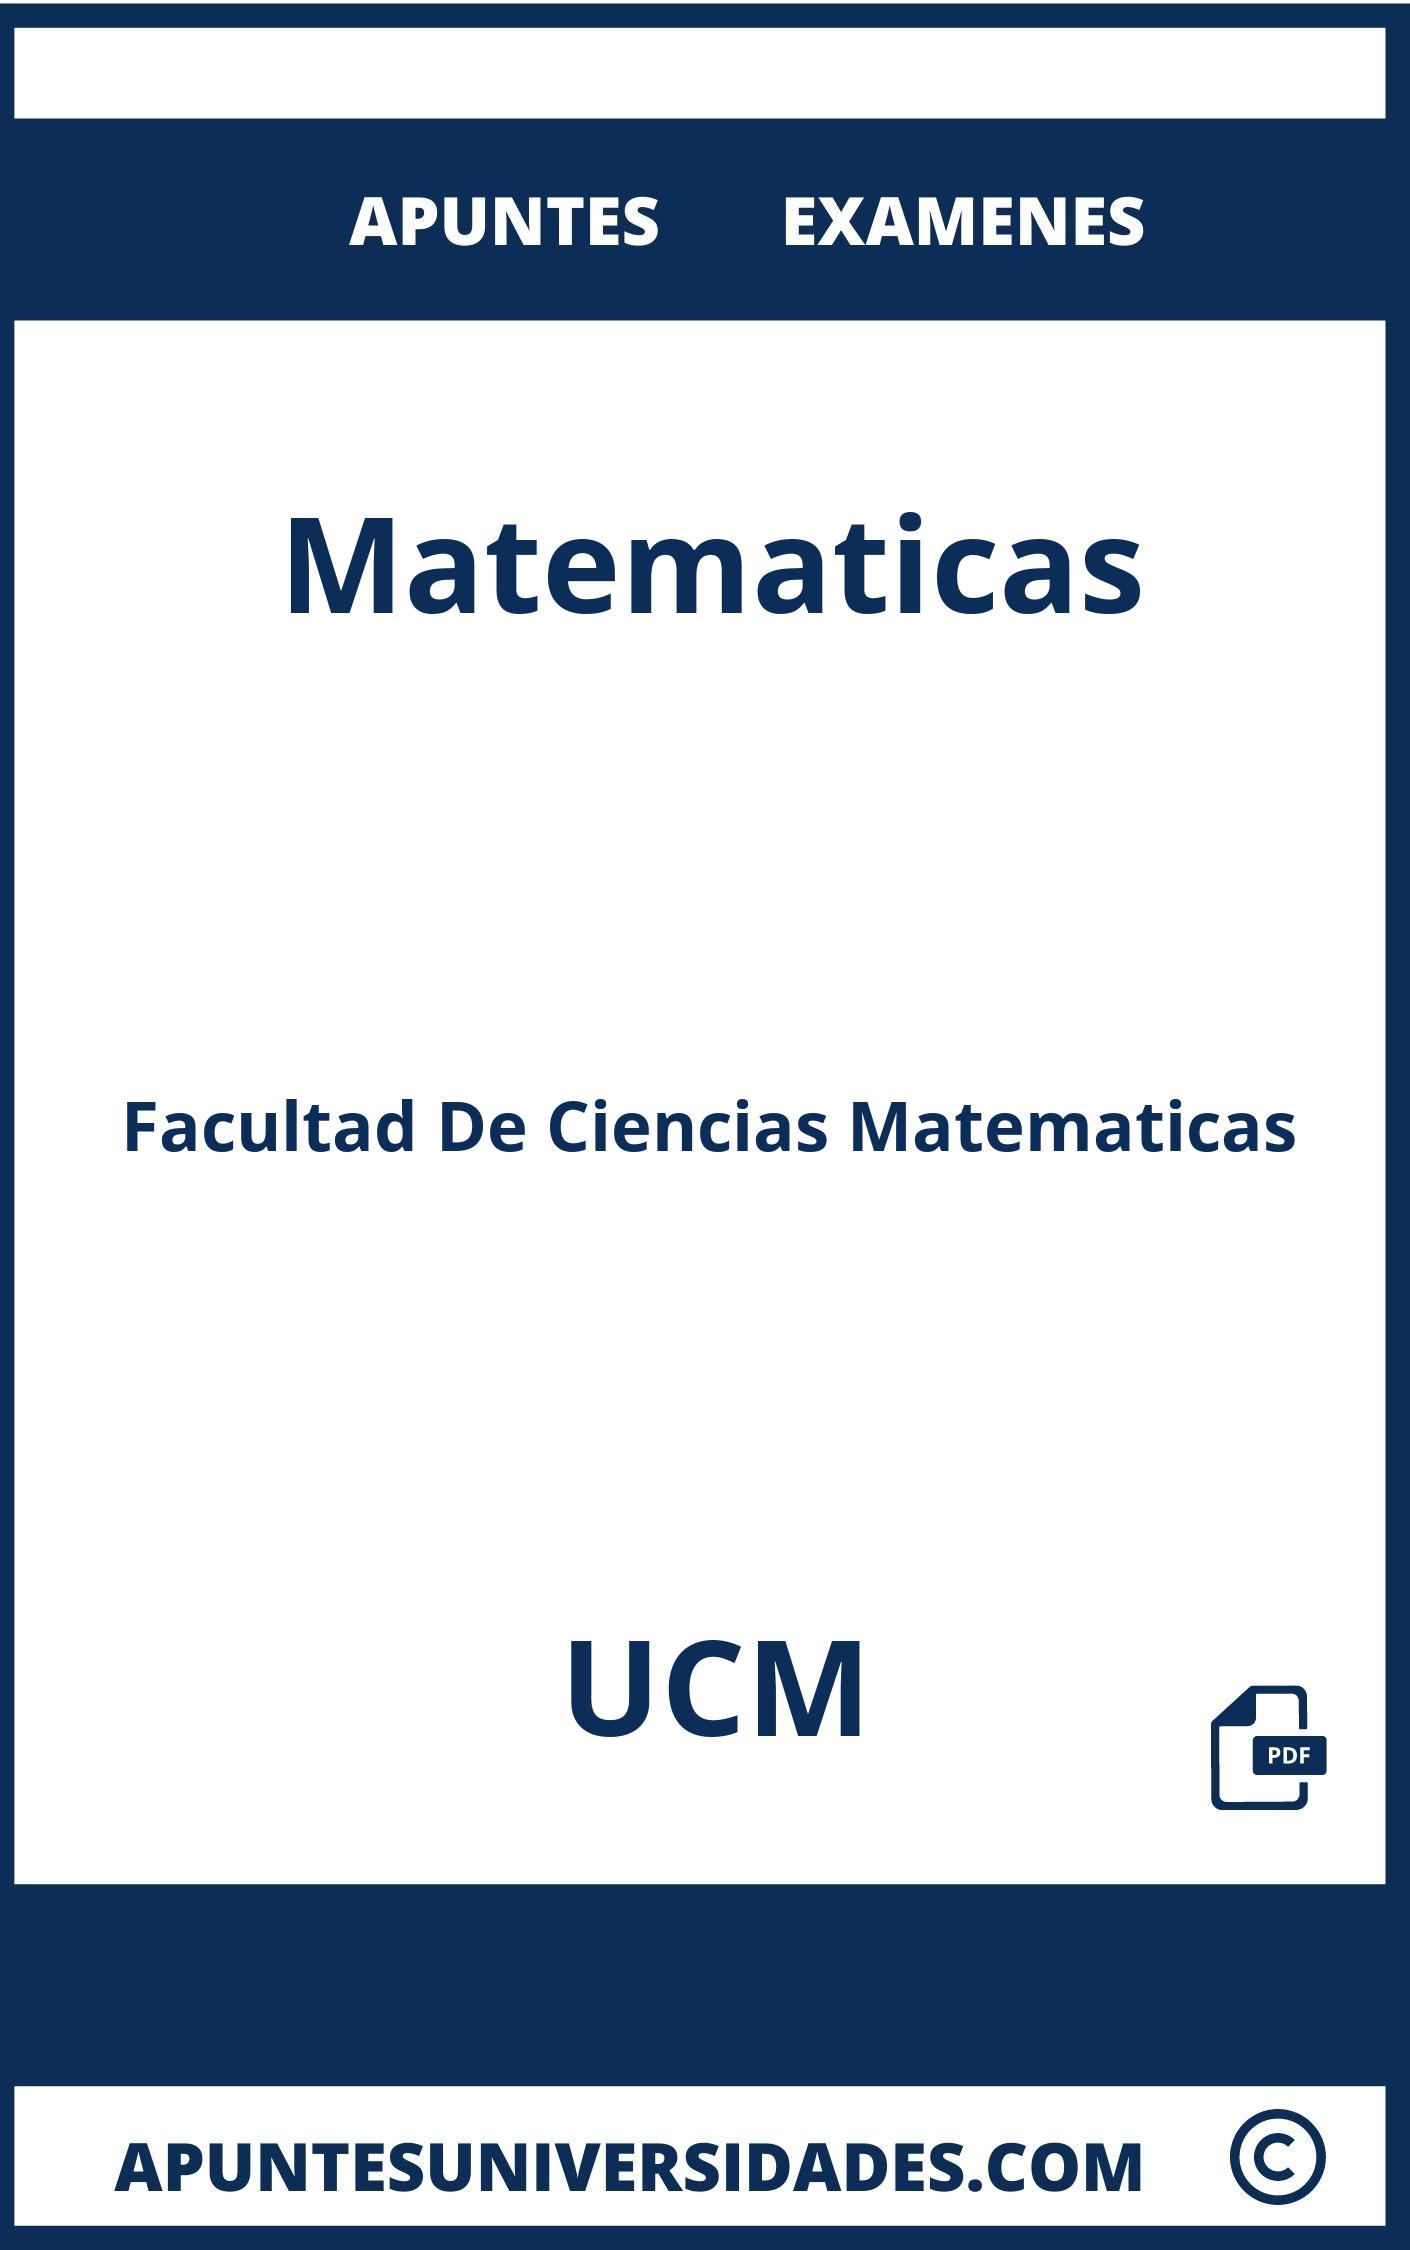 Apuntes Examenes Matematicas UCM